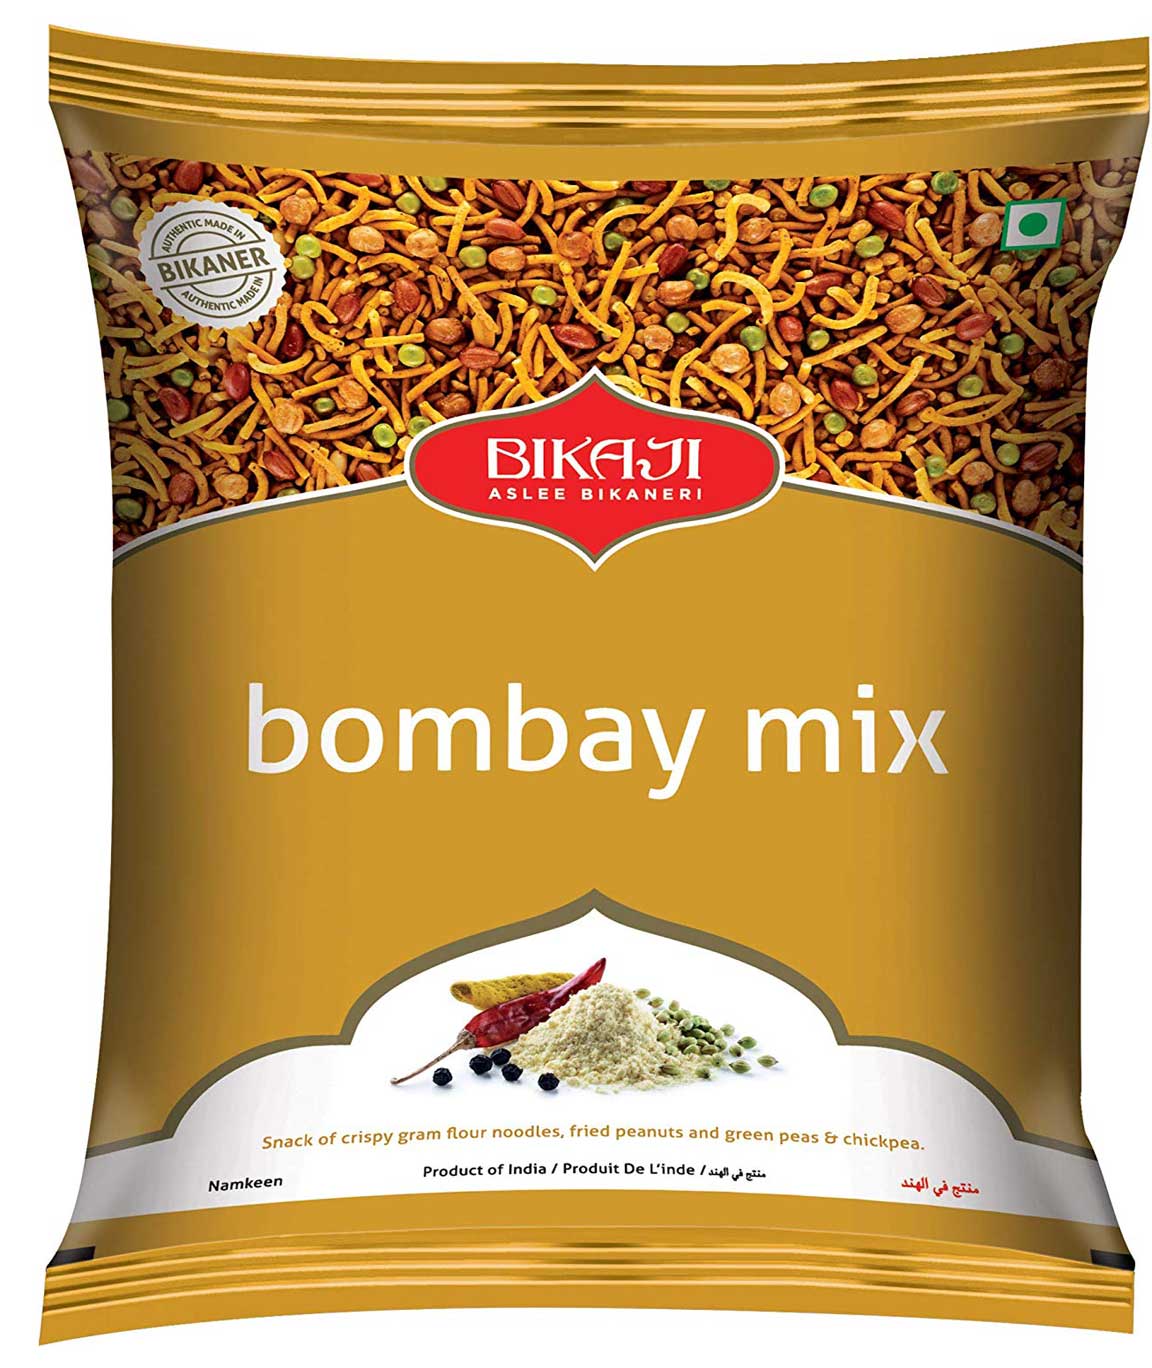 Bikaji Bombay Mix 200g - Namkeen - Mixtures Snack - Pack of 5